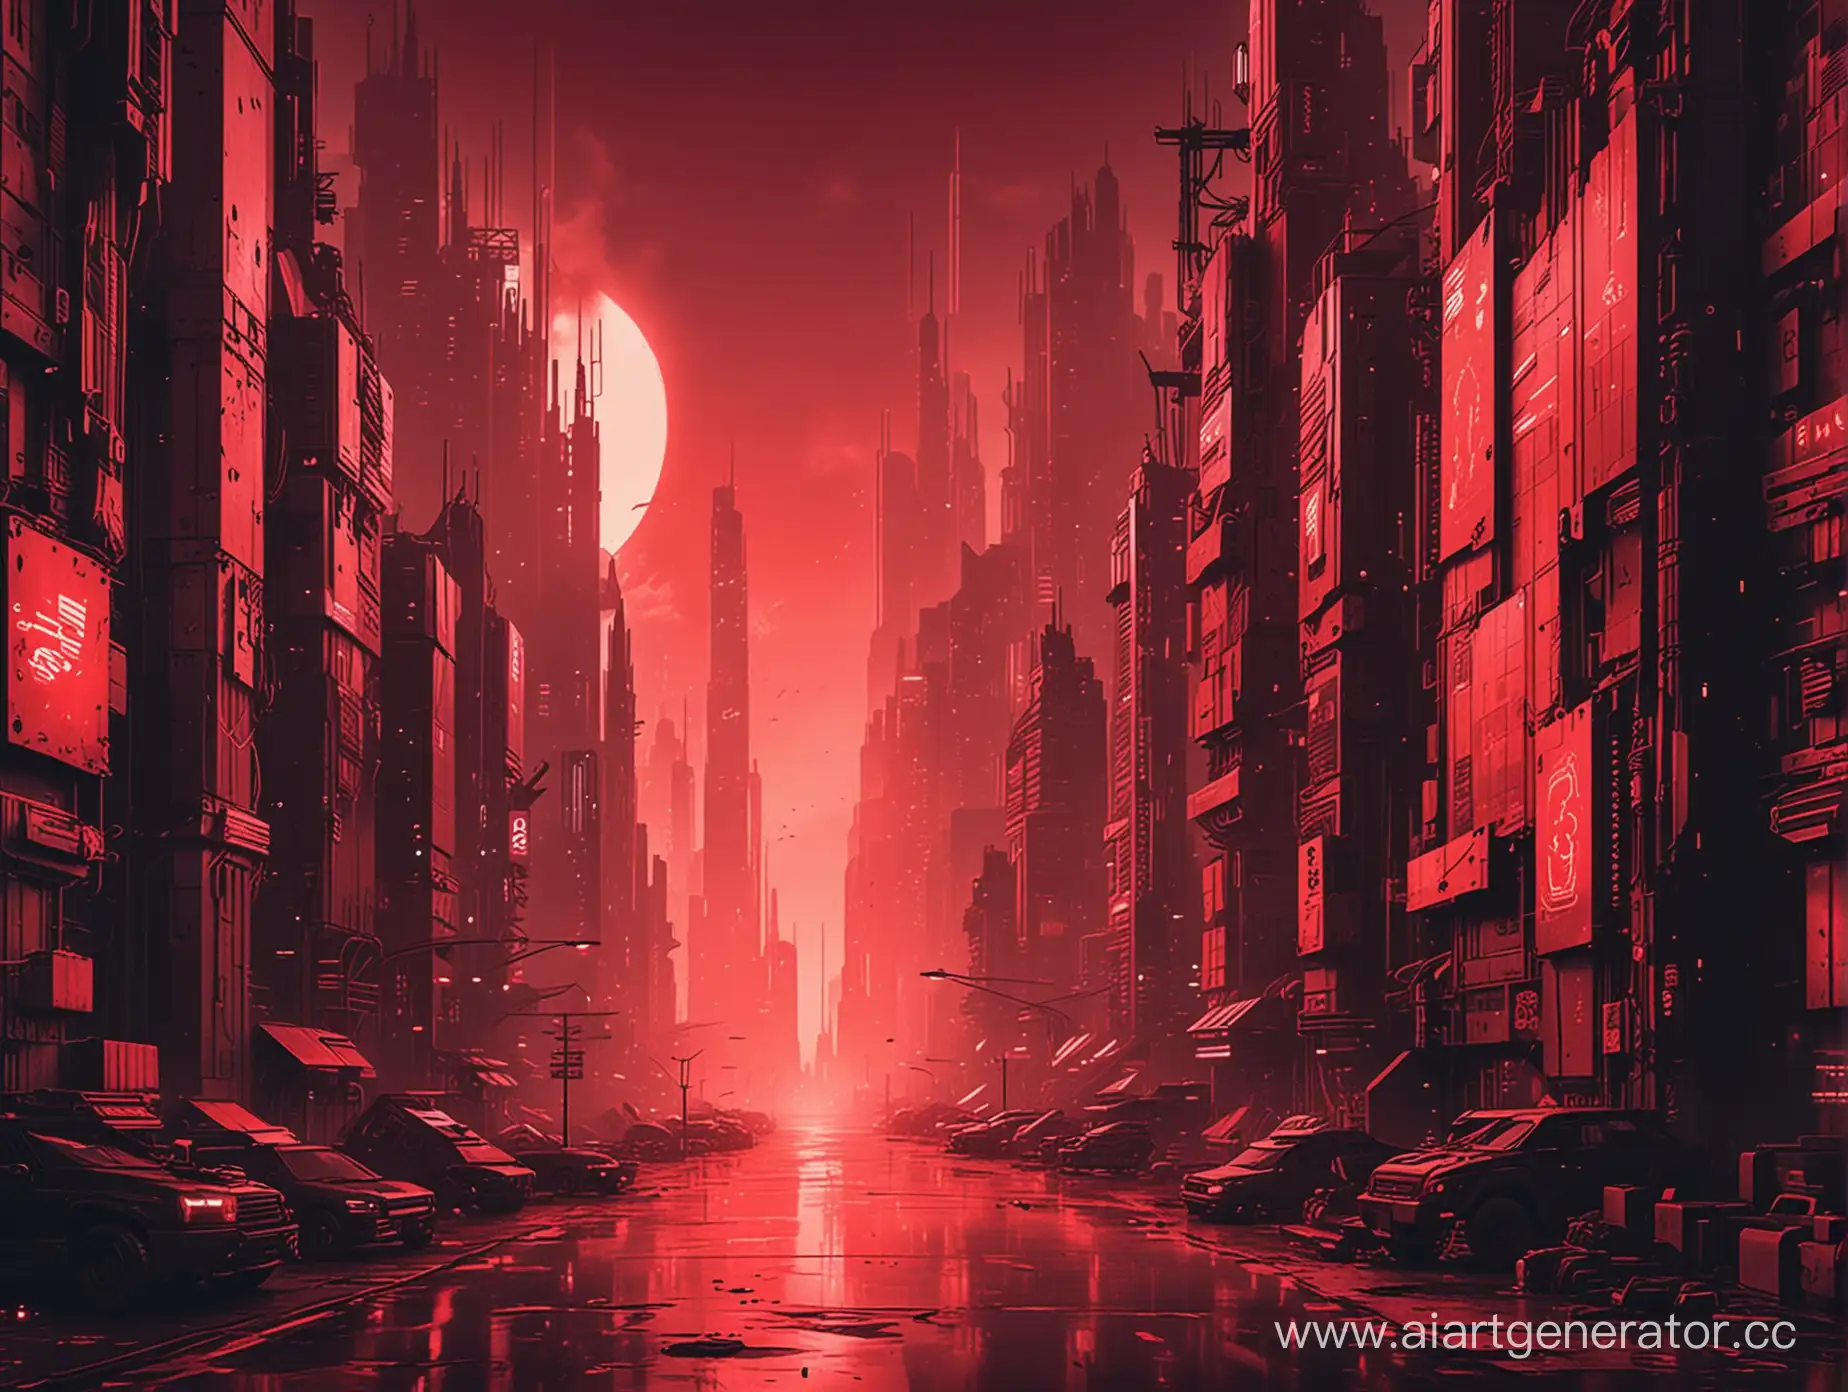 Futuristic-Urban-Landscape-in-Vibrant-Cyberpunk-Red